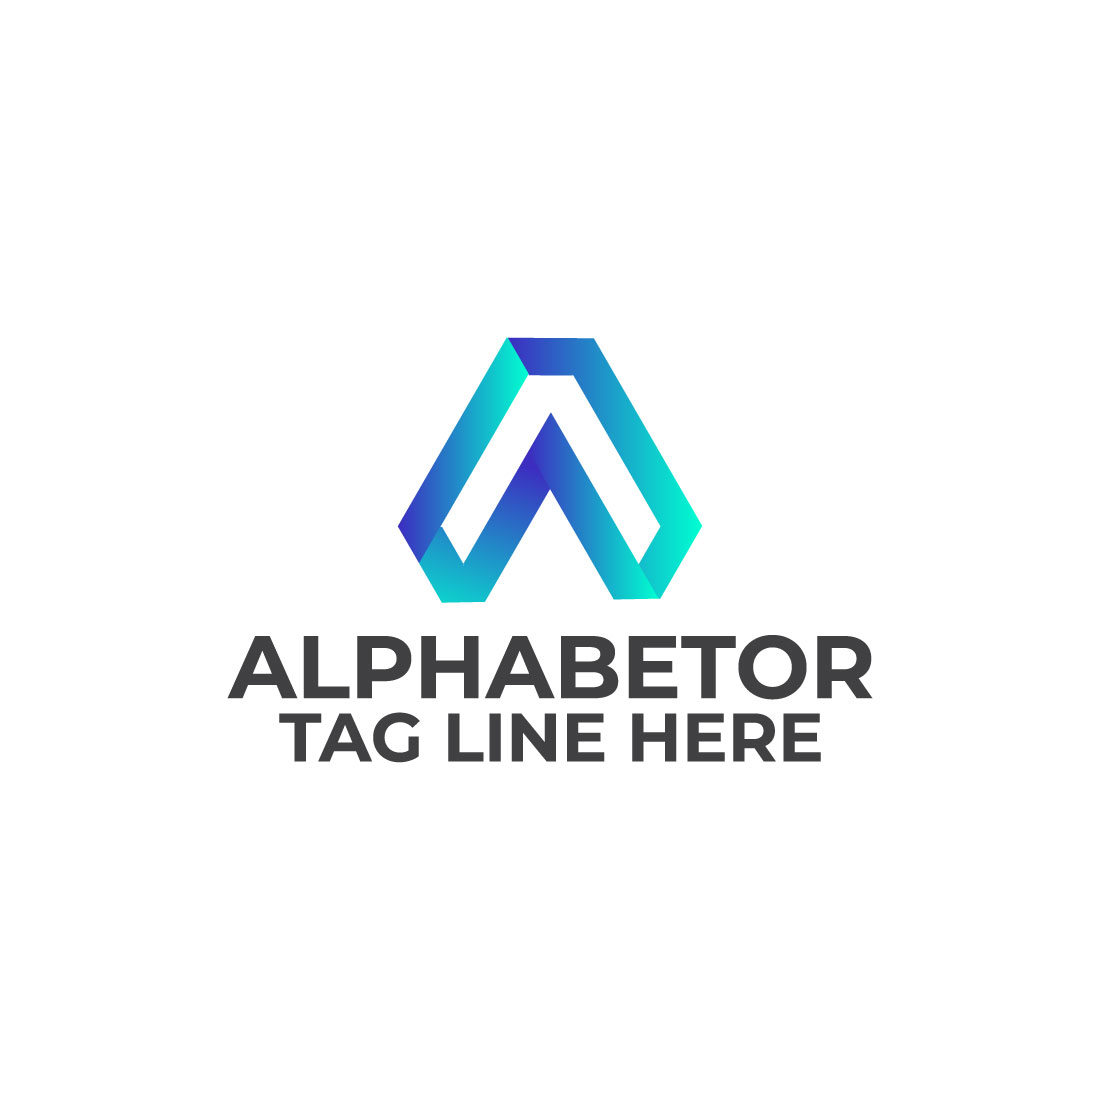 Alphabetor A letter Logo Design cover image.